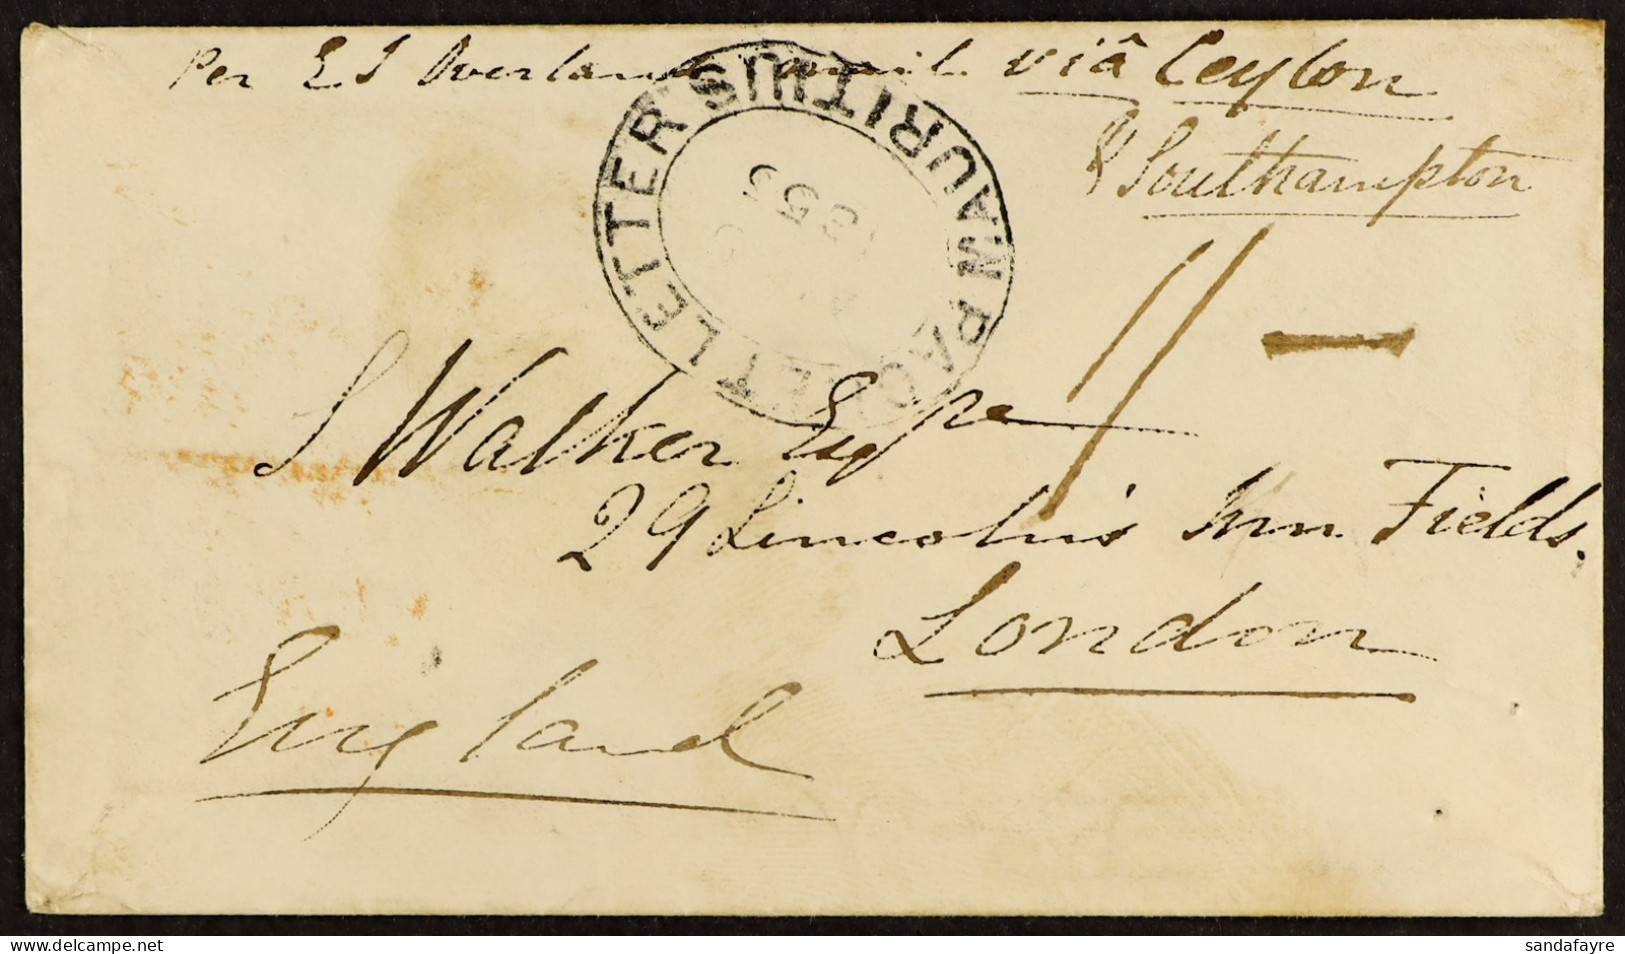 STAMP - 1855 (5th Aug) Envelope From Port Louis, MAURITIUS, To London Via Galle And Southampton, Directed â€˜via Ceylon  - ...-1840 Préphilatélie